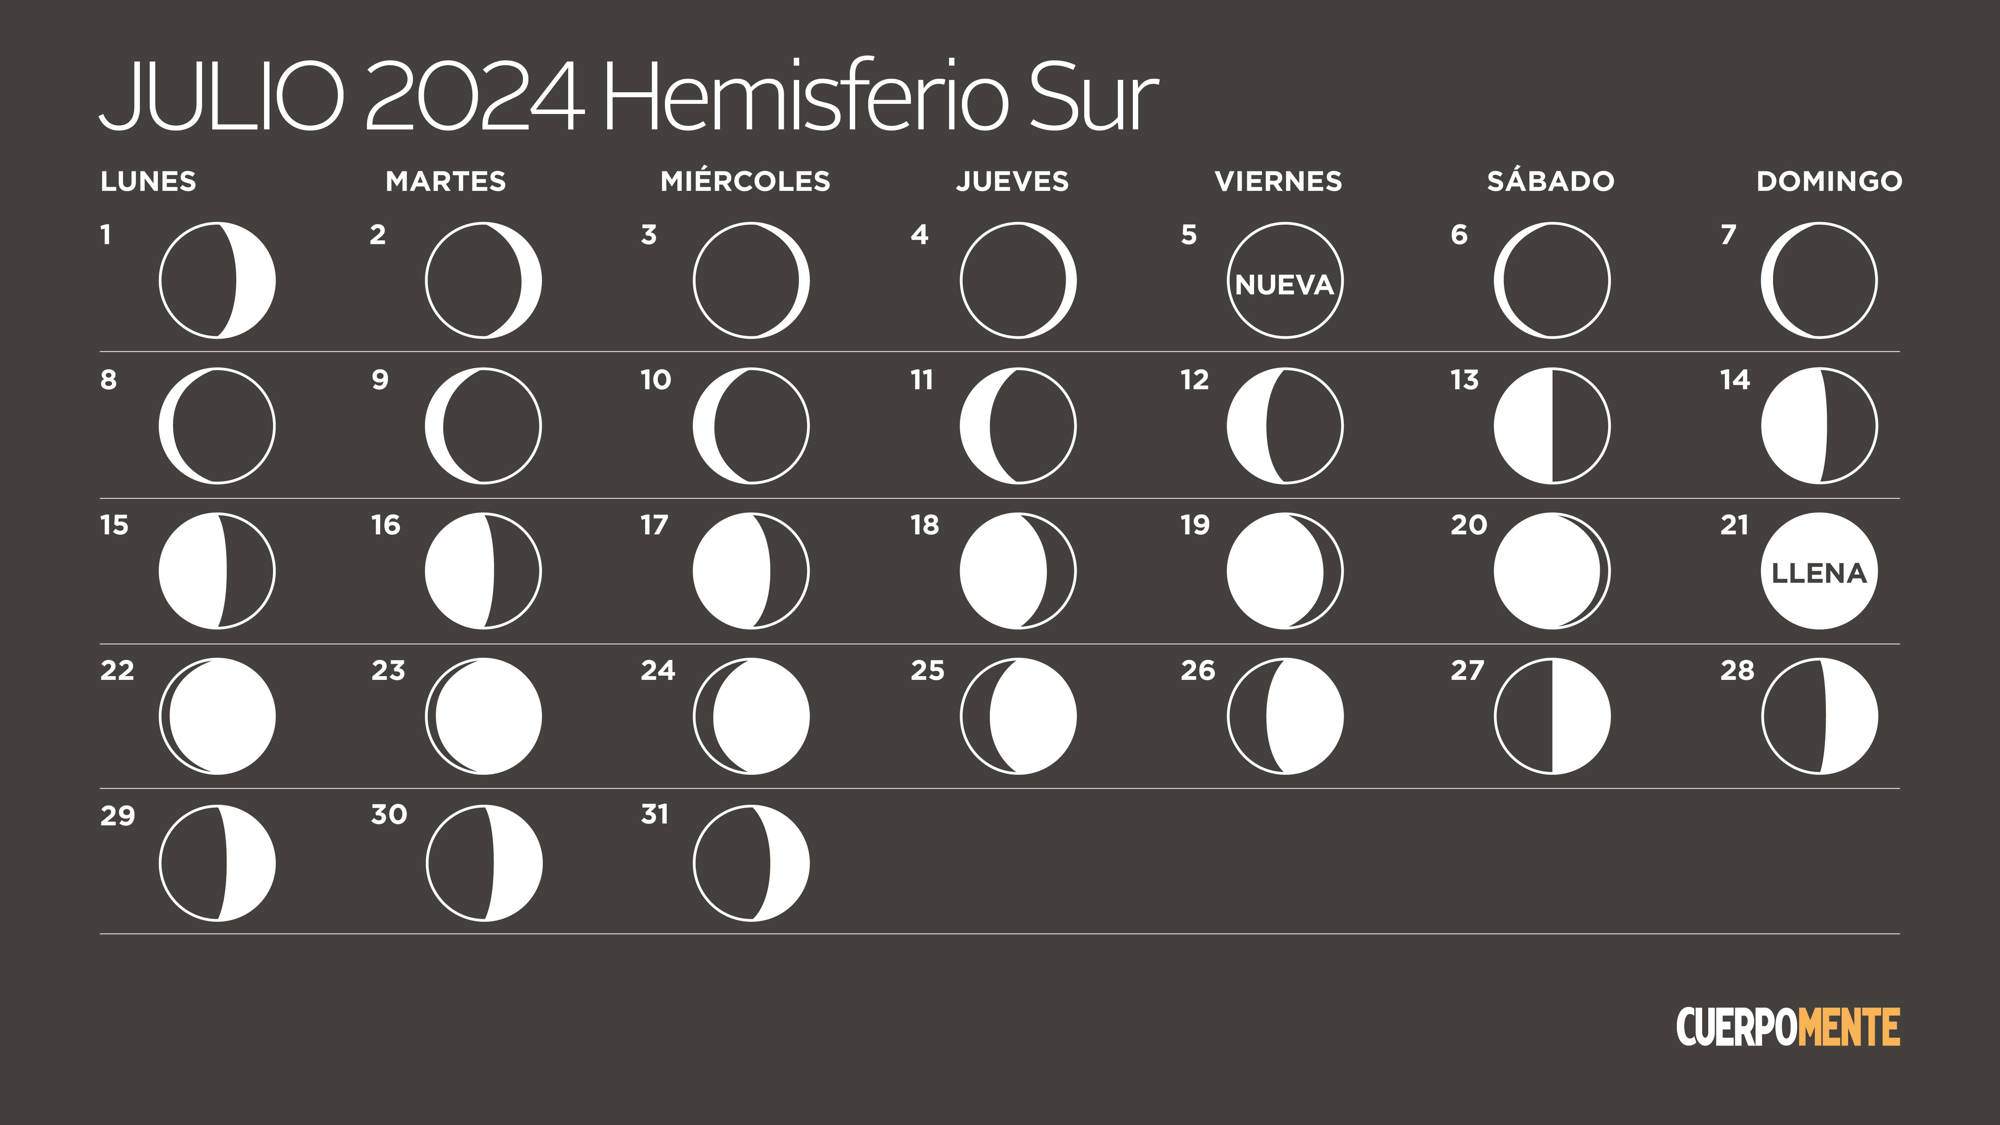 Calendario lunar 2024 Argentina, Uruguay y otros países del hemisferio sur